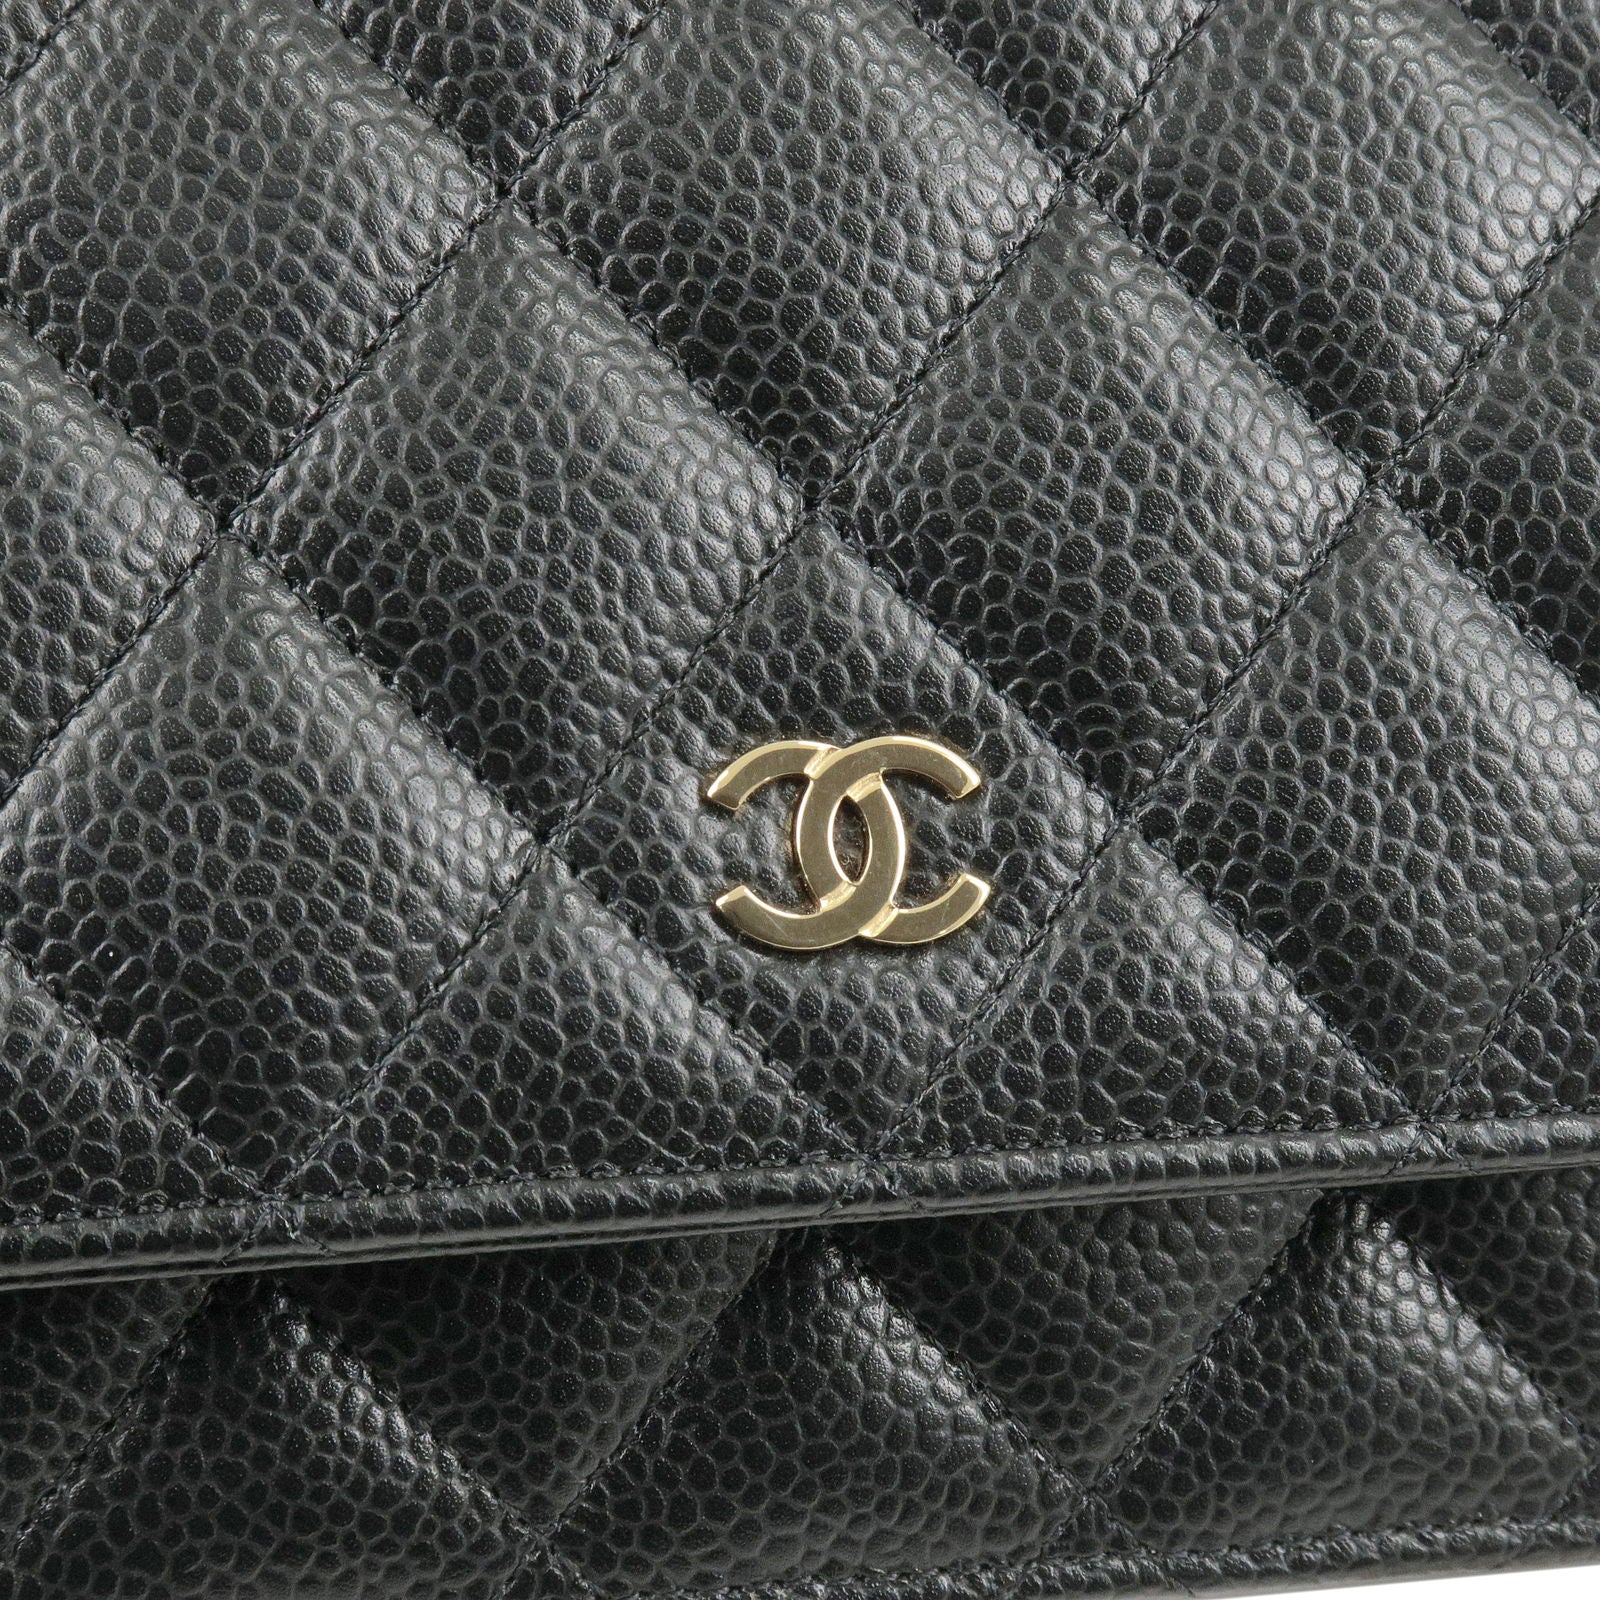 Vintage Chanel Quilted Rhinestone Fringe Shoulder Bag